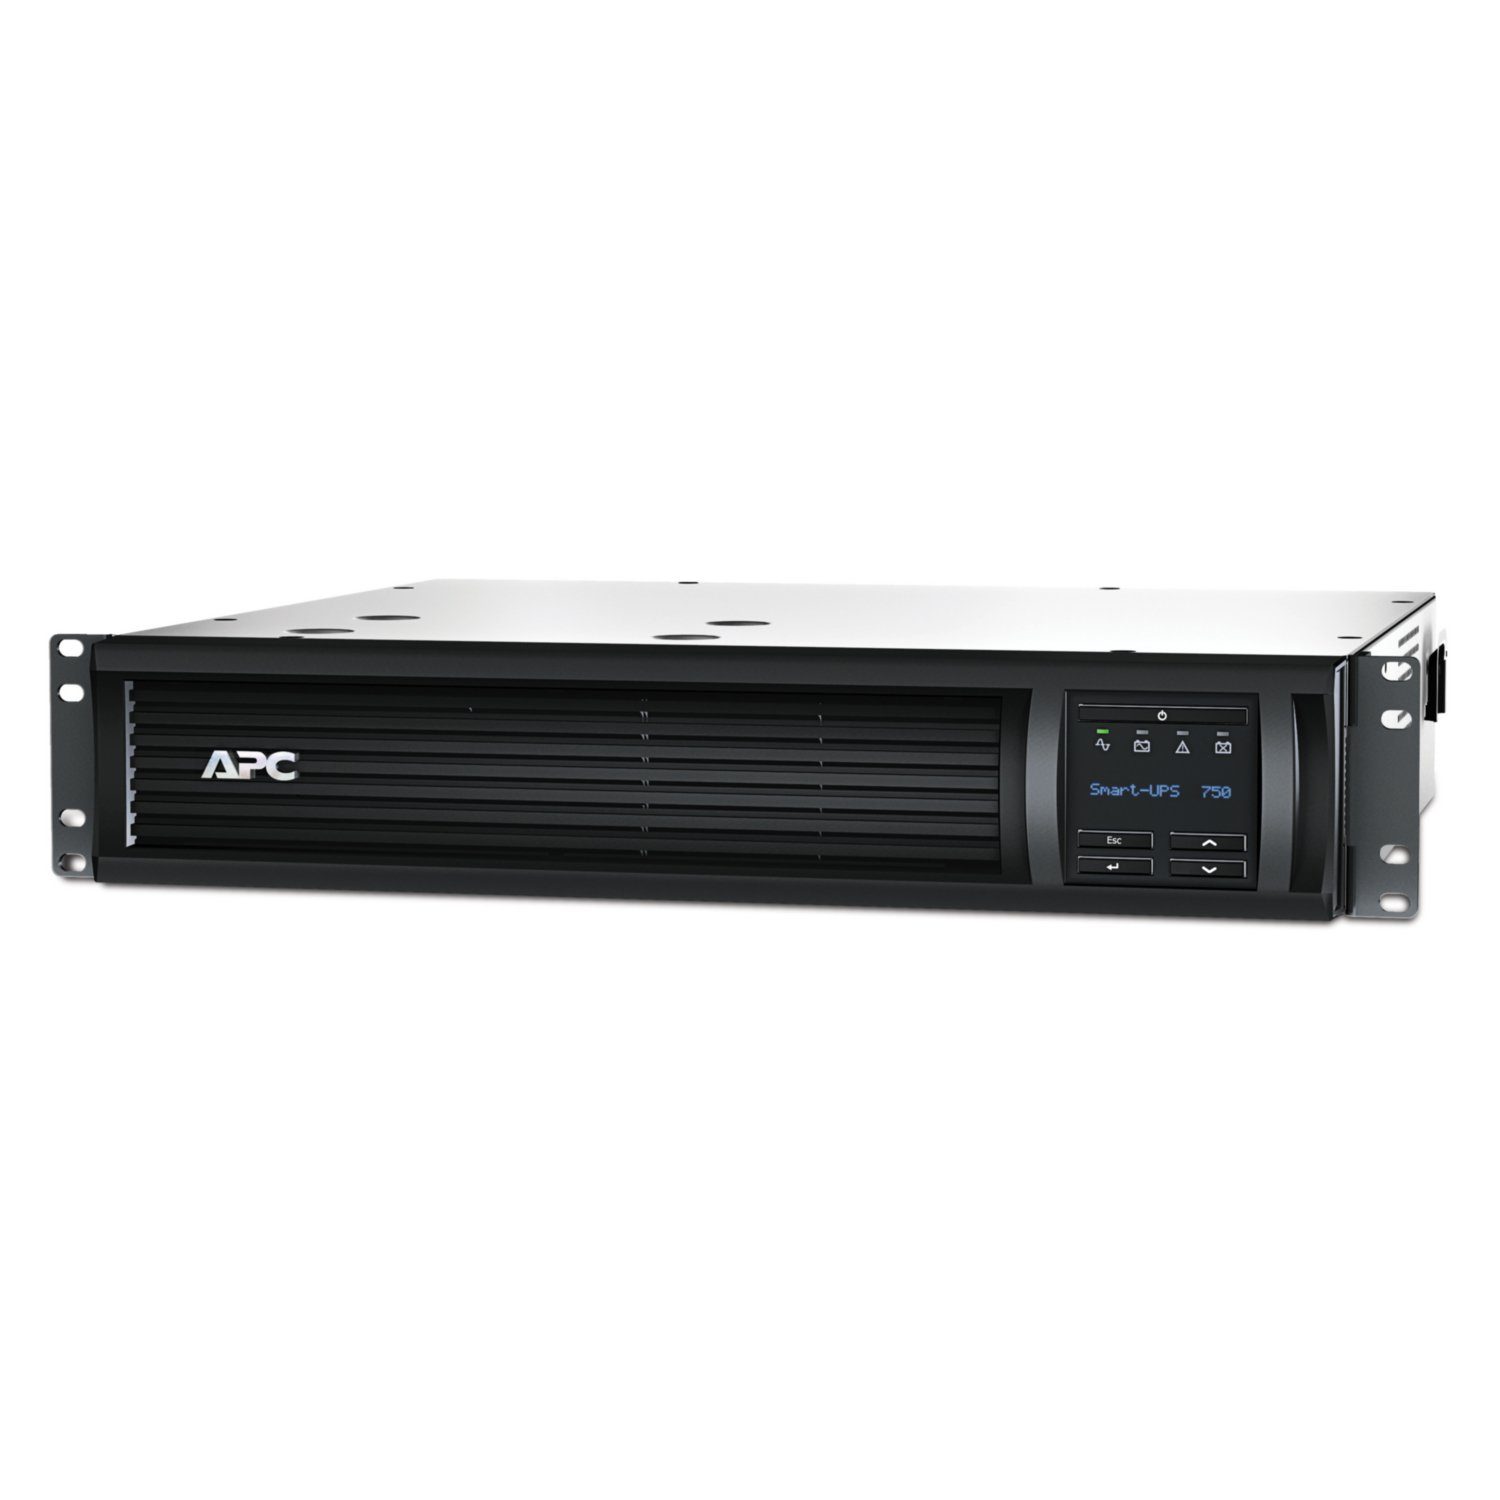 APC USV-Anlage APC Smart-UPS 750VA LCD 230V RM 2U SmartSlot USB 5min Runtime 500W wit